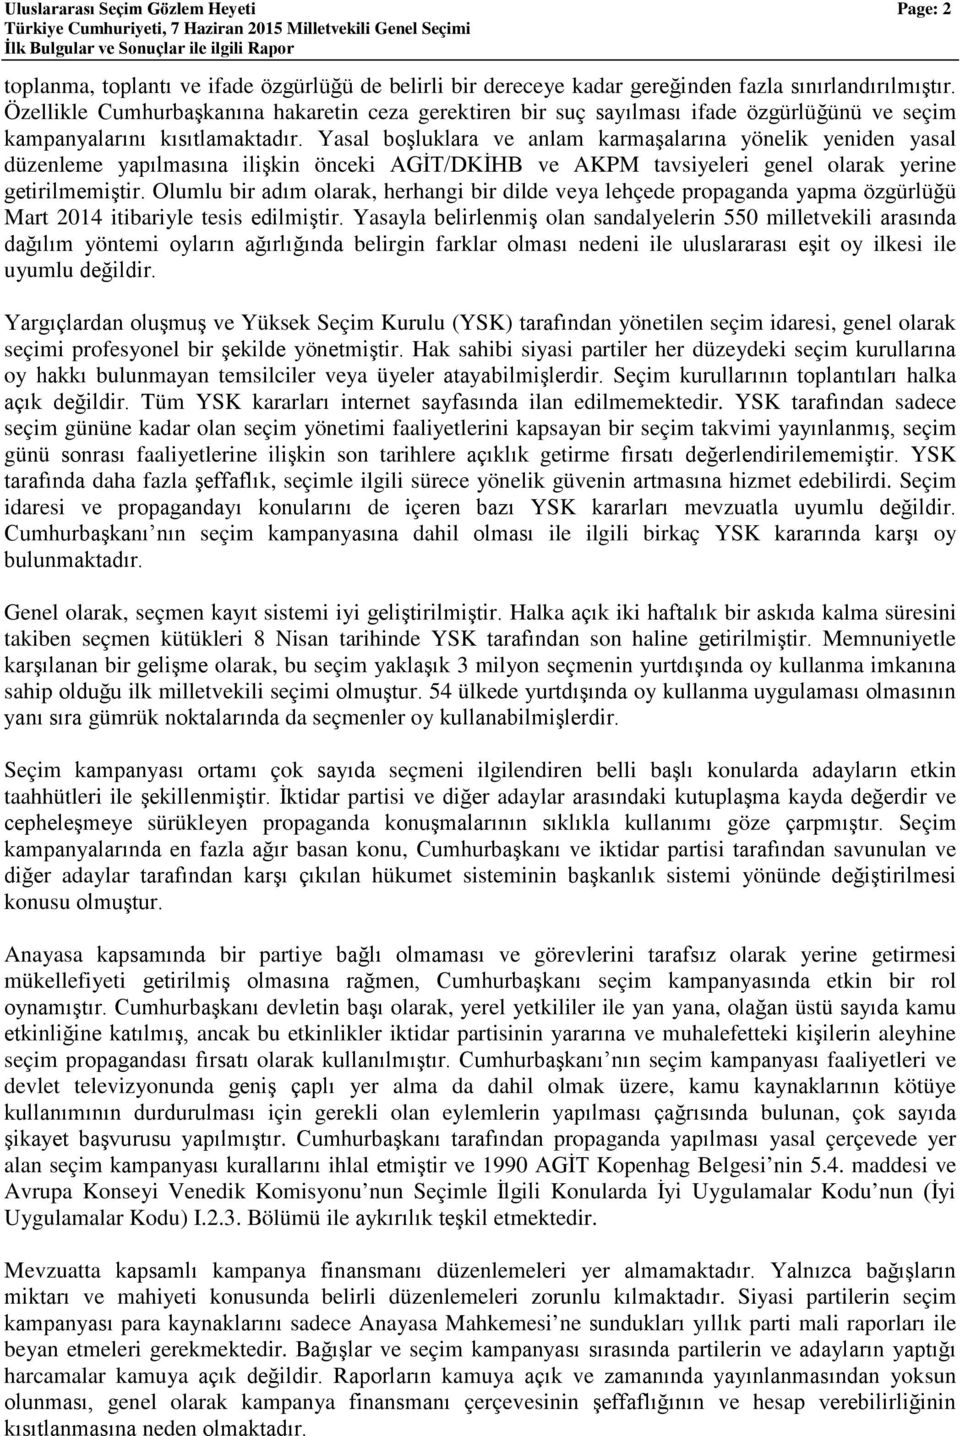 Yasal boşluklara ve anlam karmaşalarına yönelik yeniden yasal düzenleme yapılmasına ilişkin önceki AGİT/DKİHB ve AKPM tavsiyeleri genel olarak yerine getirilmemiştir.